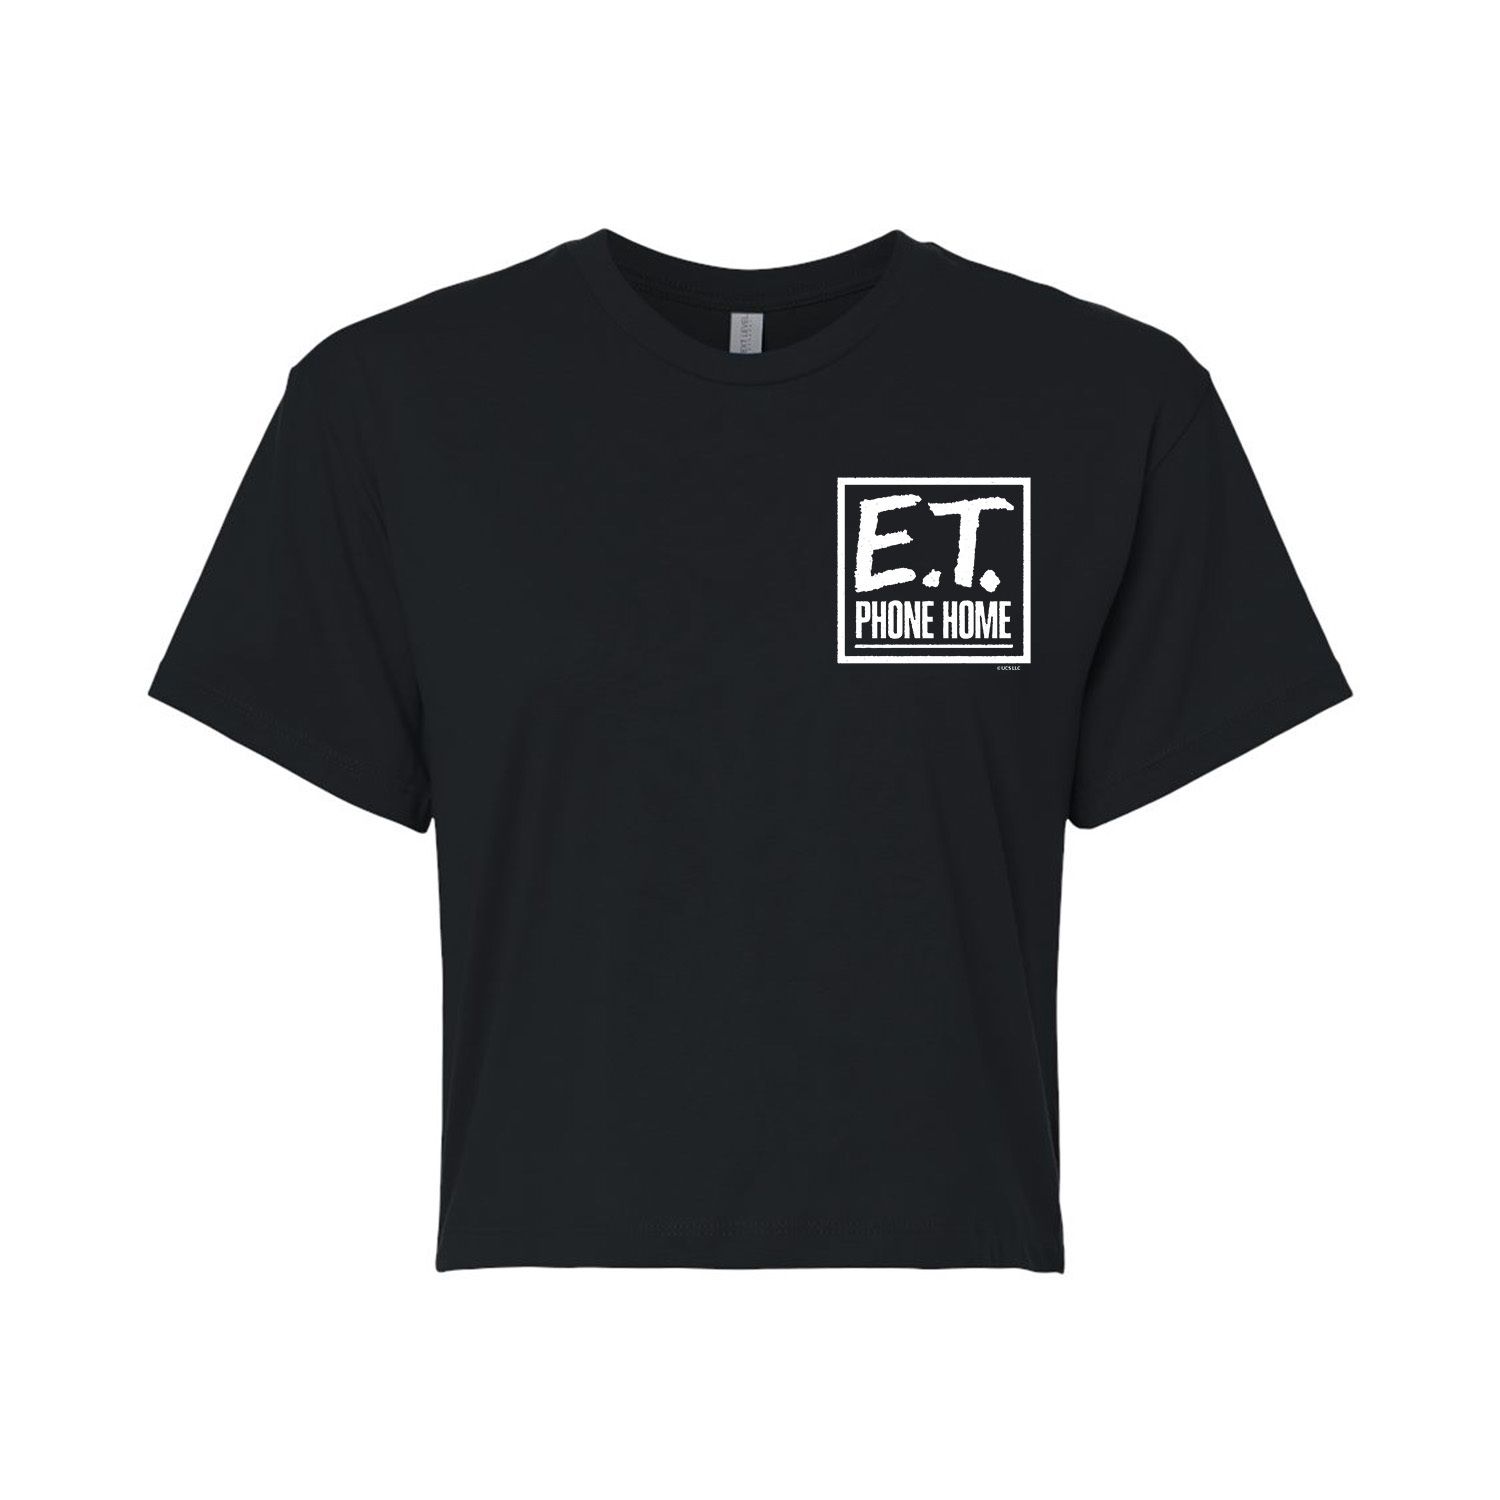 Юниоры E.T. Укороченная футболка с рисунком Phone Home Licensed Character юниоры e t укороченная футболка с рисунком shine together licensed character белый